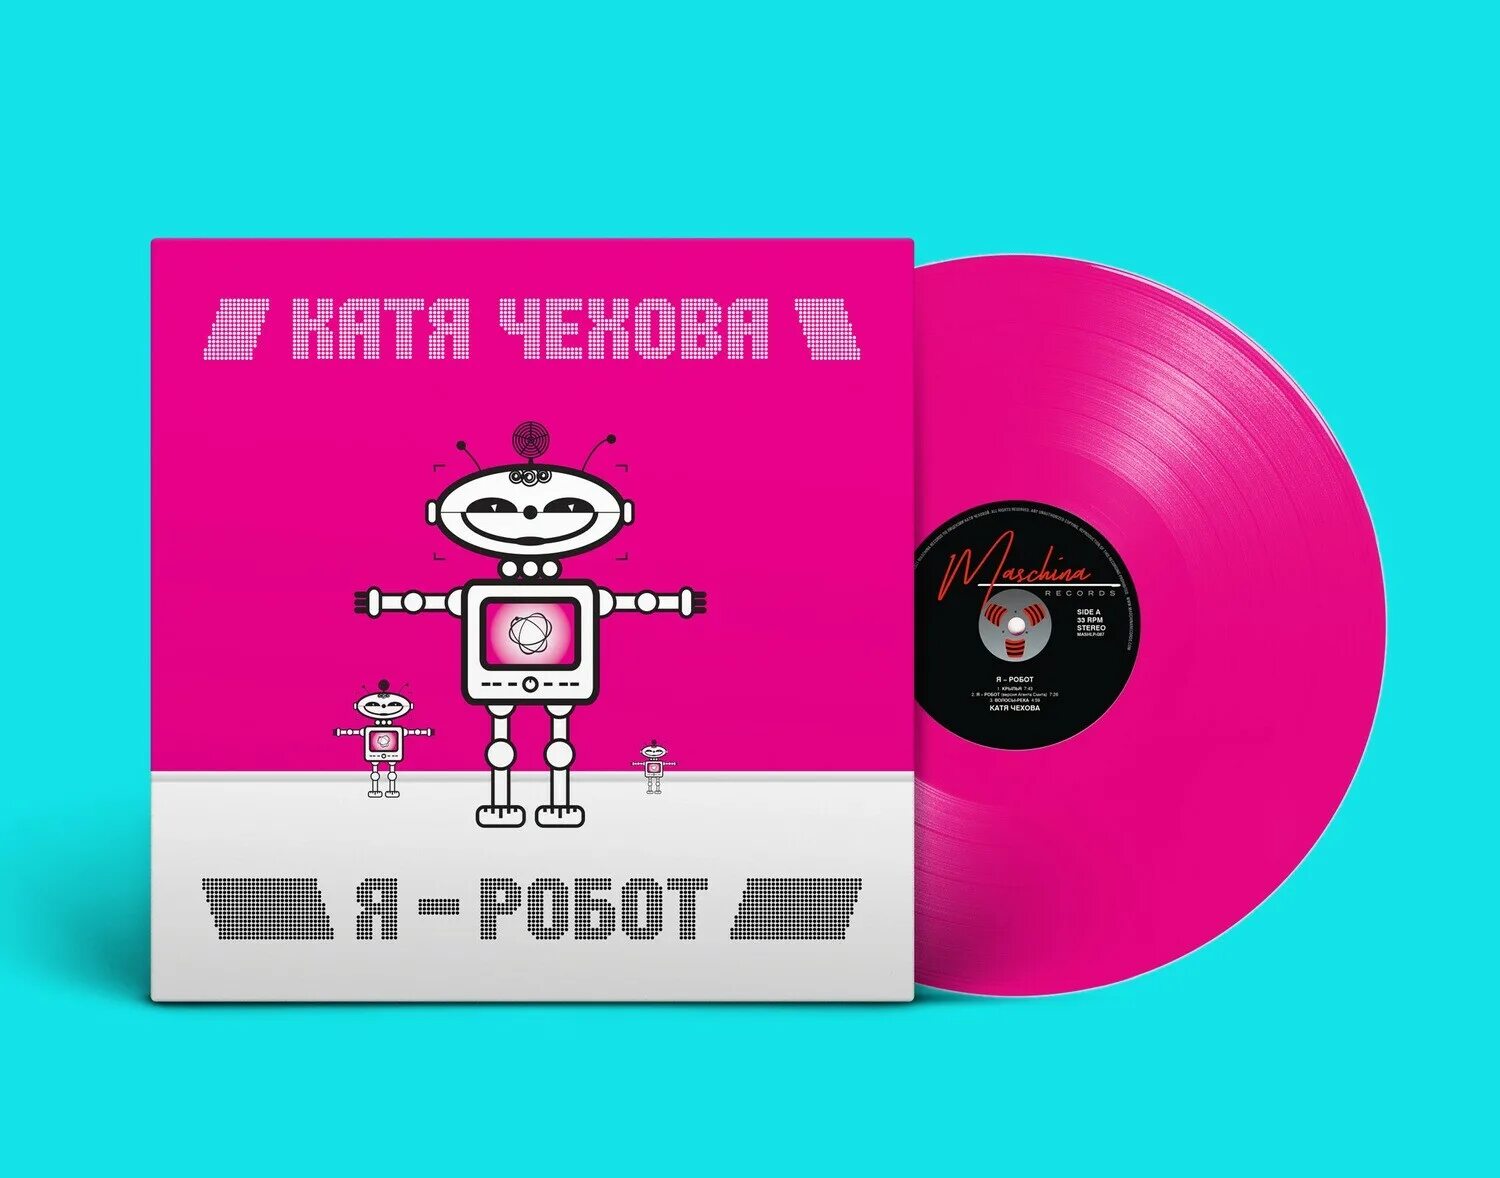 Robots mp3. Катя Чехова - я - робот (2005). Катя Чехова - я - робот (mp3 альбом). Катя Чехова альбом я робот. Катя Чехова я робот LP.